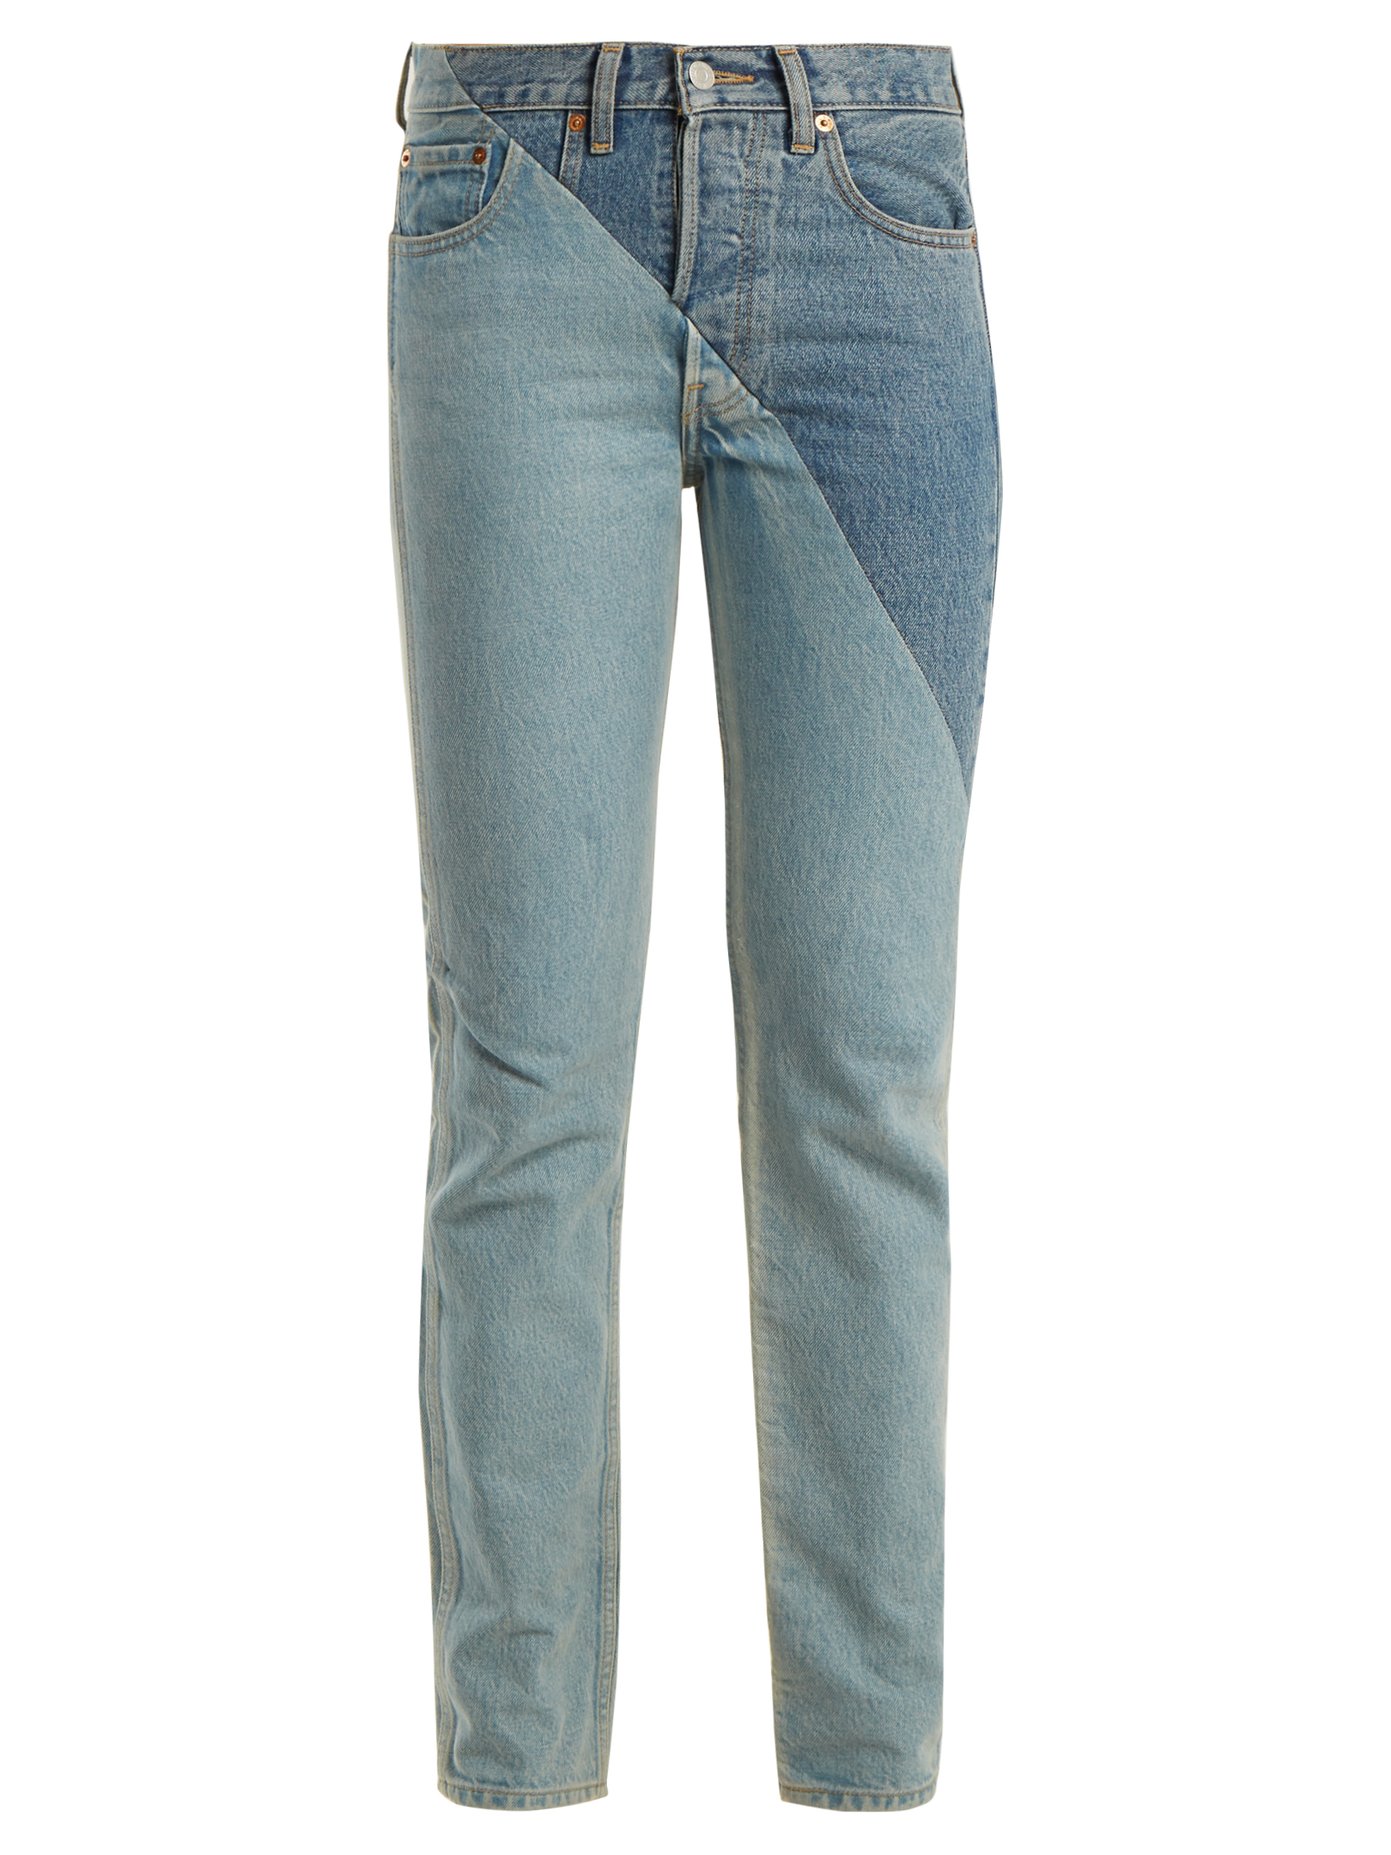 levis jeans fr